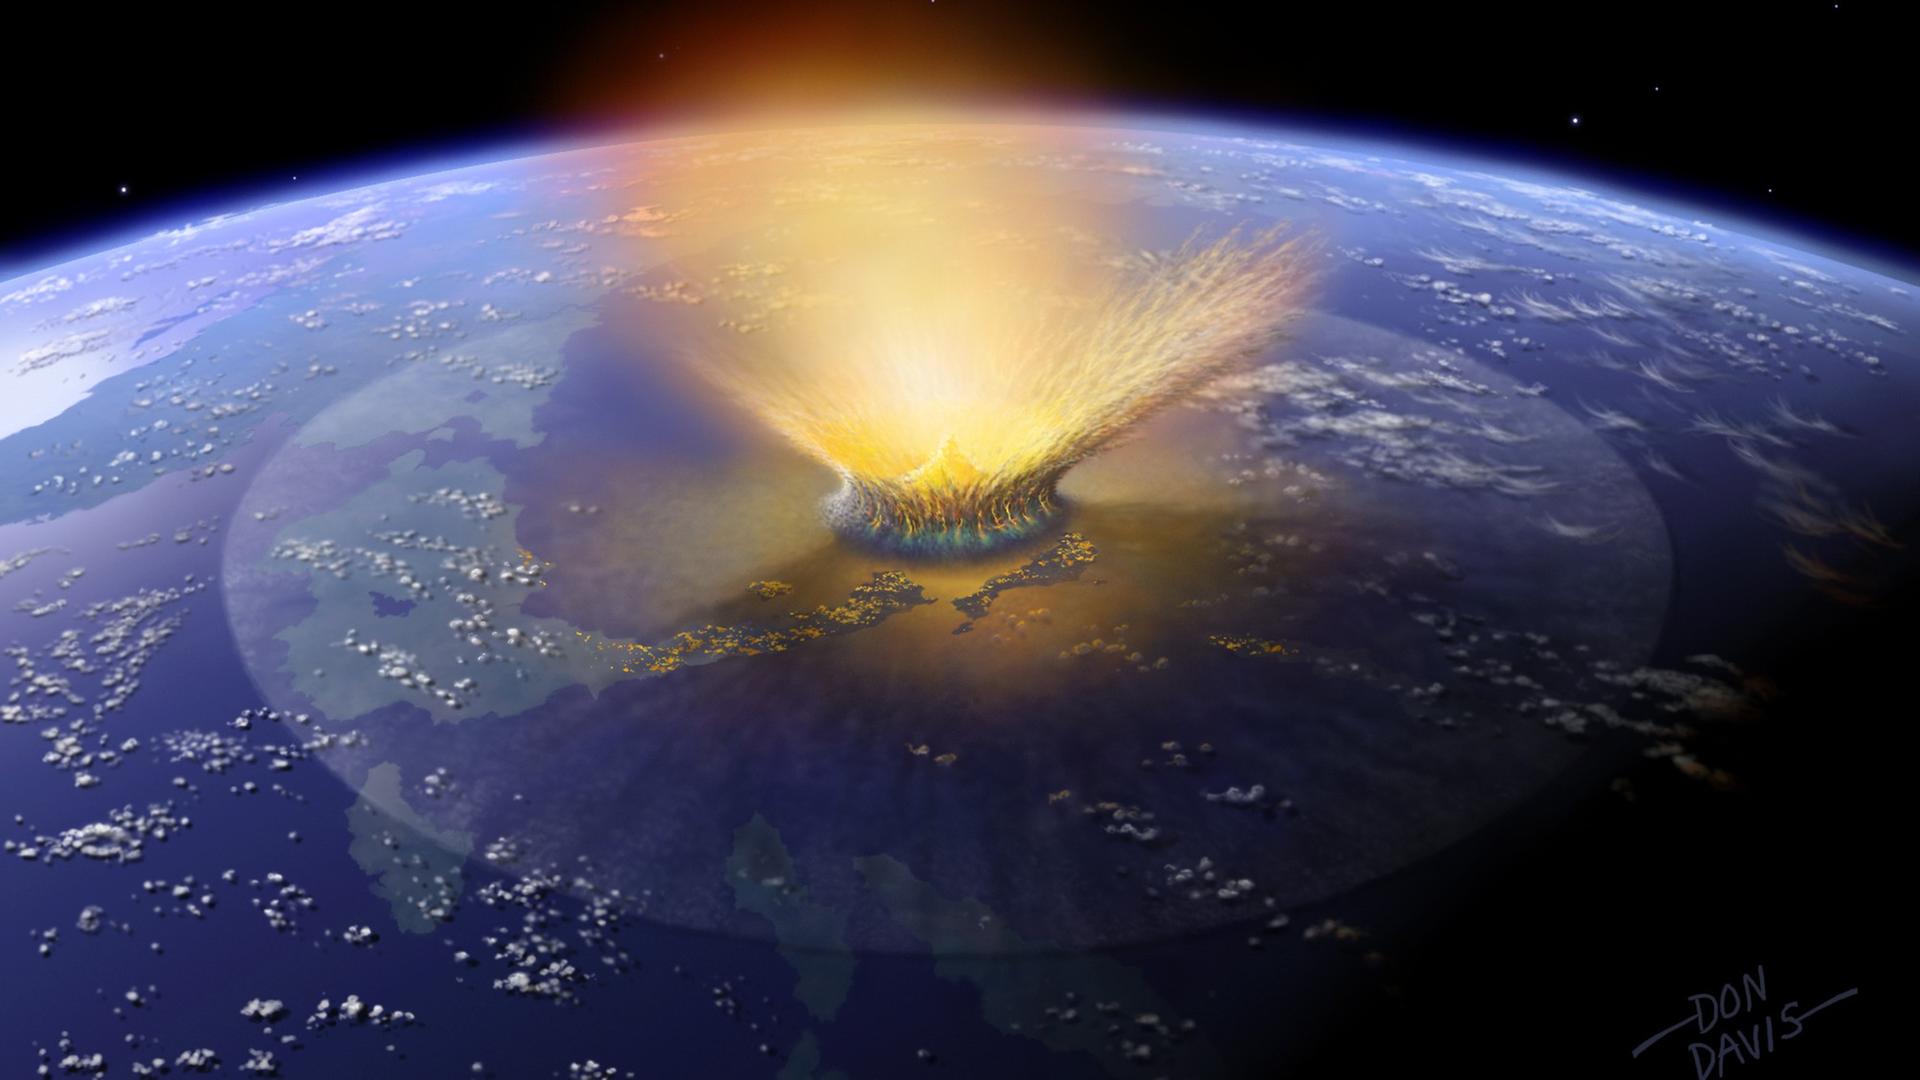 Die undatierte Illustration zeigt den katastrophalen Asteroideneinschlag auf der Erde, der vor etwa 66 Millionen Jahren die meisten Dinosaurier und ein Großteil aller anderen Tierarten ausgerottet haben soll.